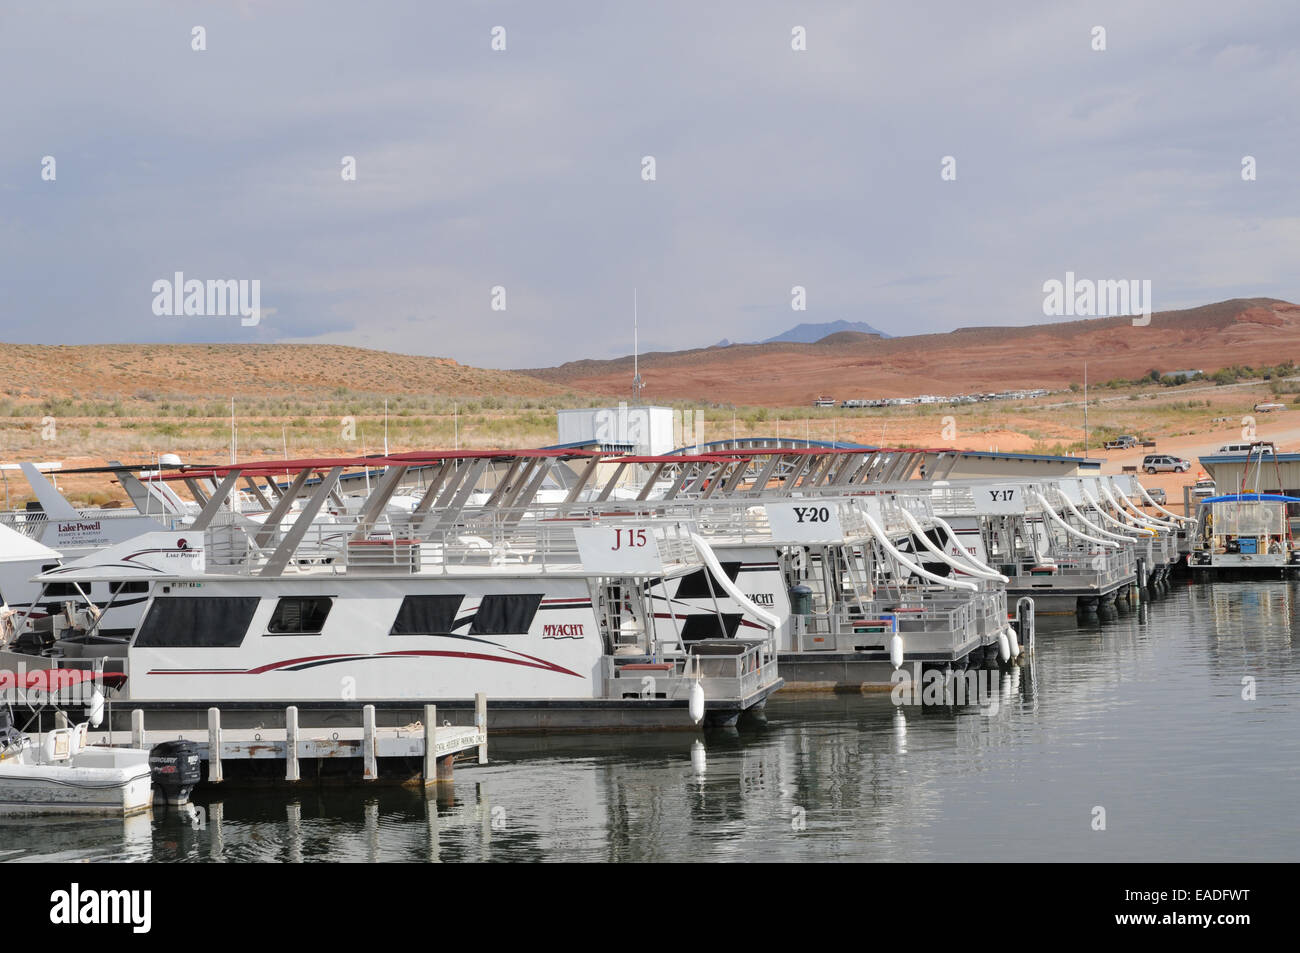 Out of season moored up houseboats at Bullfrog Marina, Lake Powell, Utah. Stock Photo